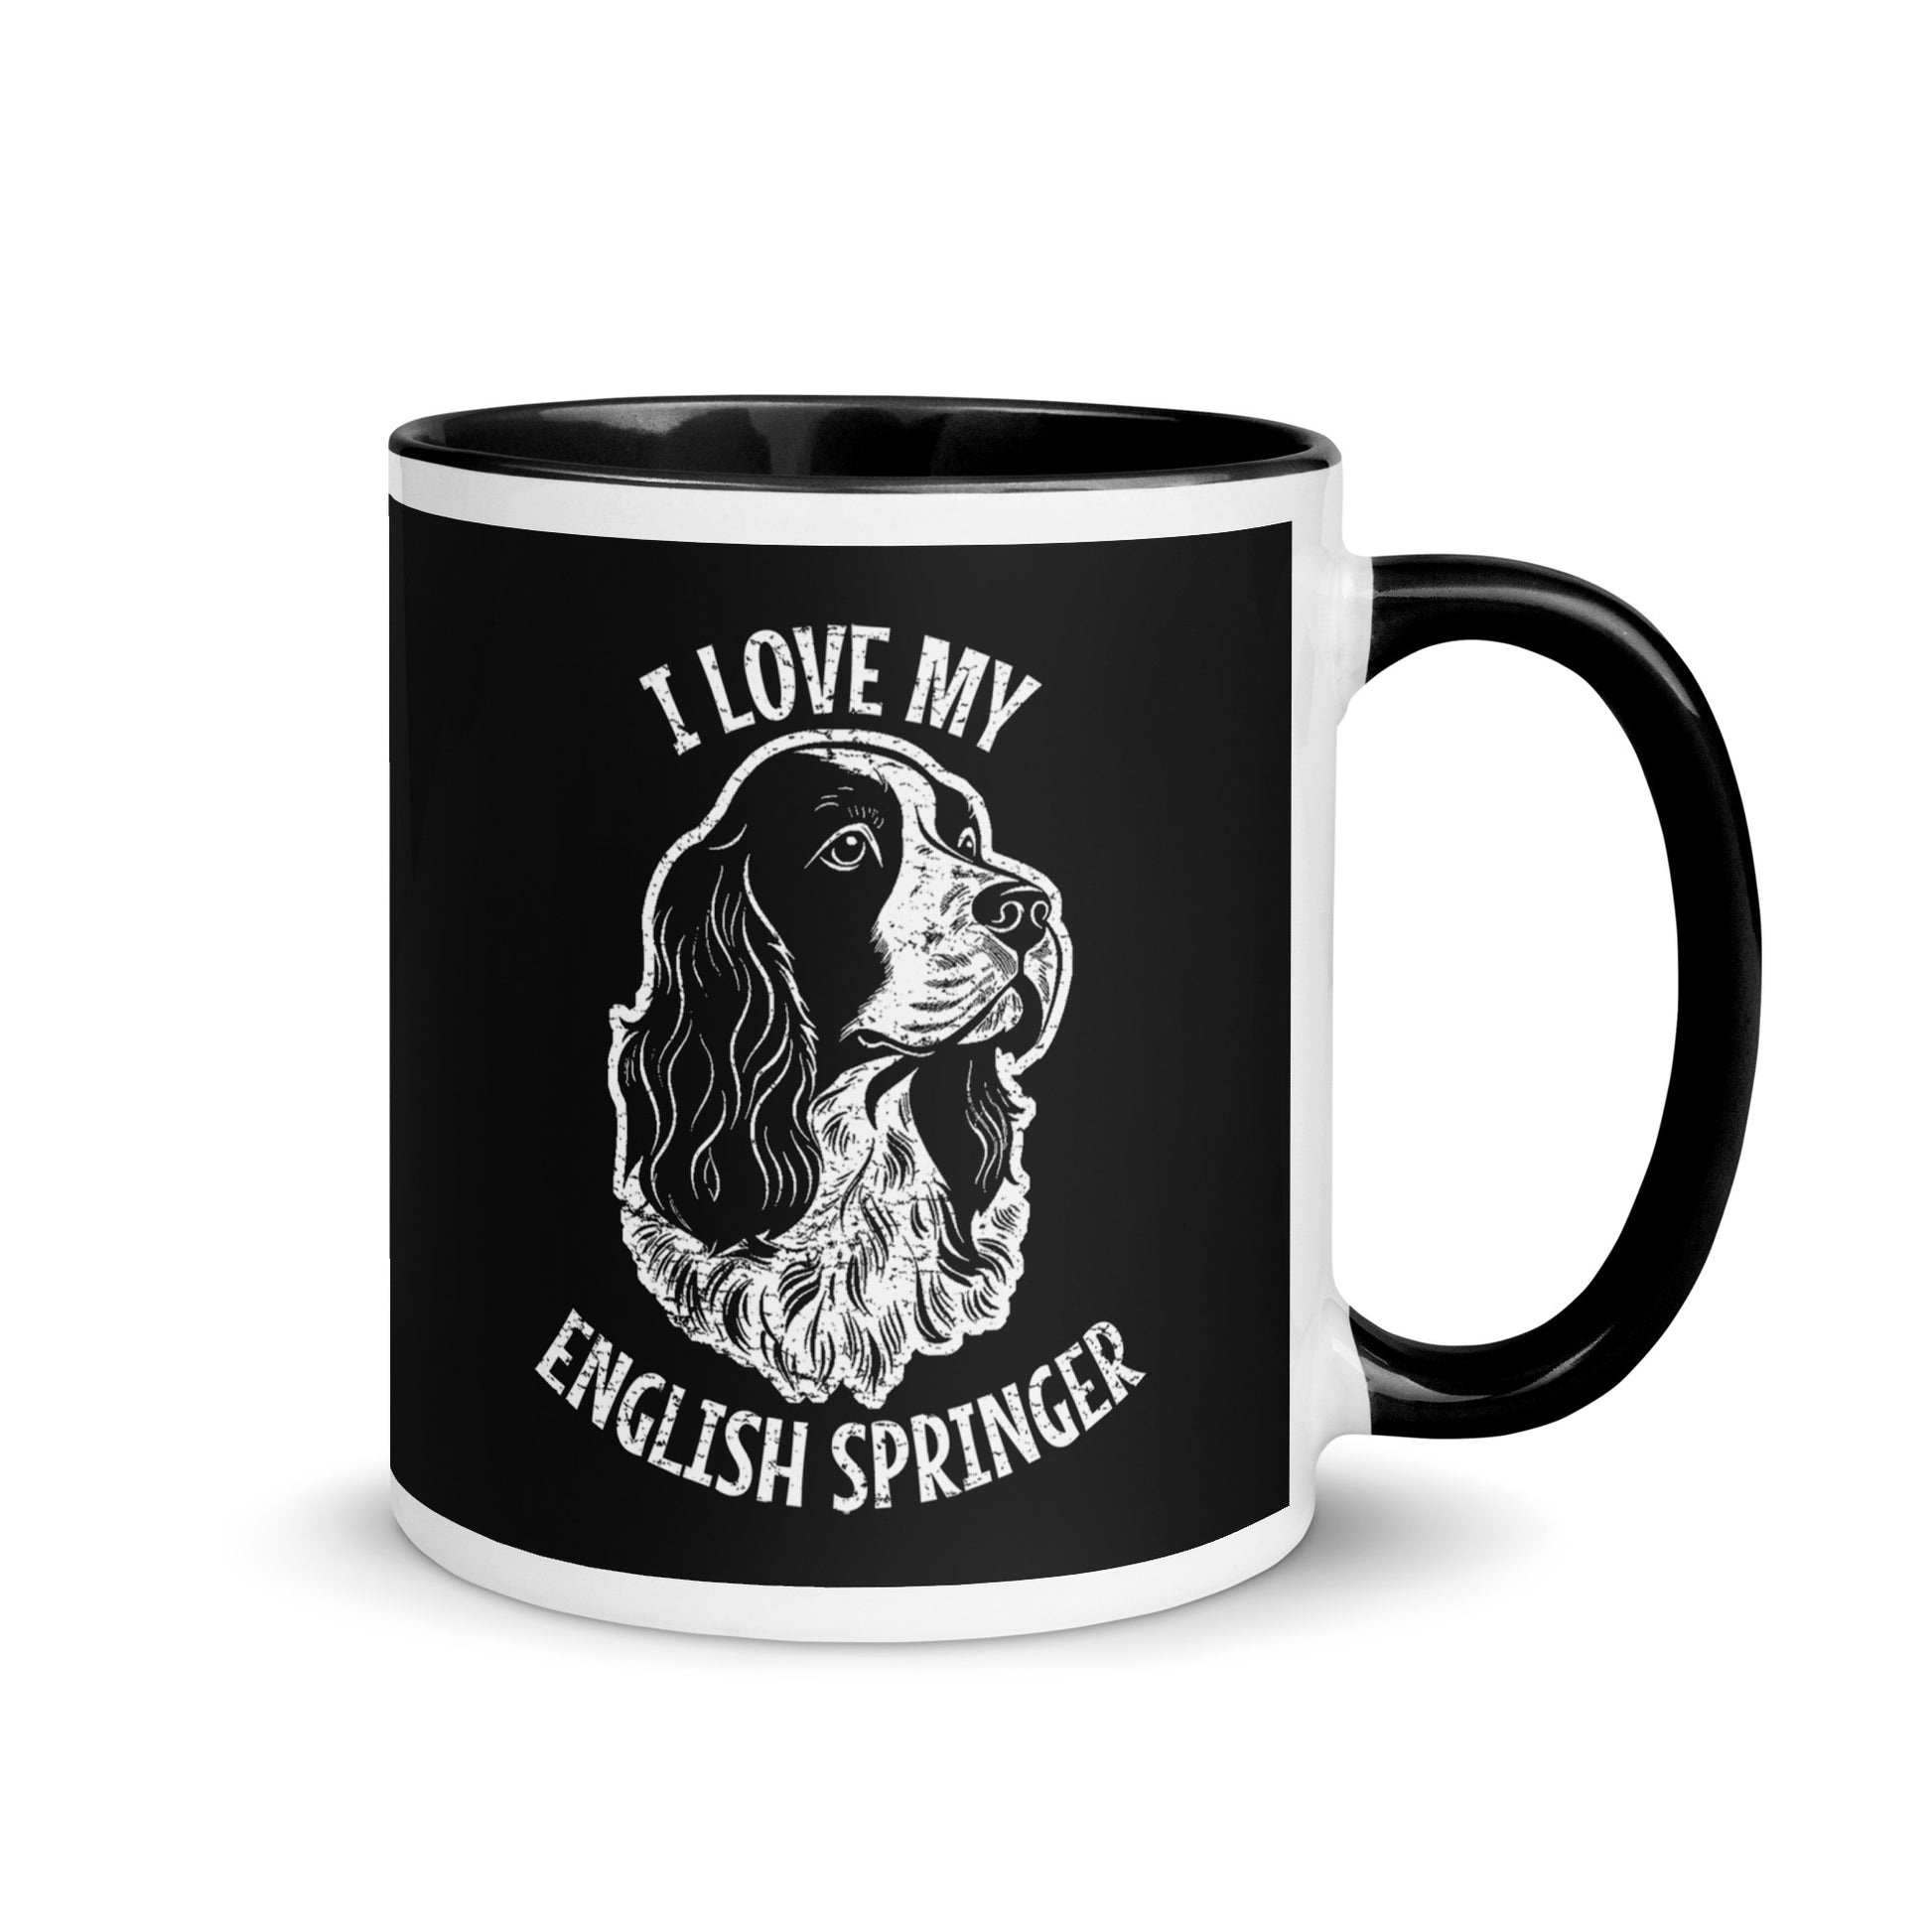 English Springer Spaniel Mug, English Springer Spaniel gift, gift for dog mom, custom dog gift, dog owner gift, pet memorial gift